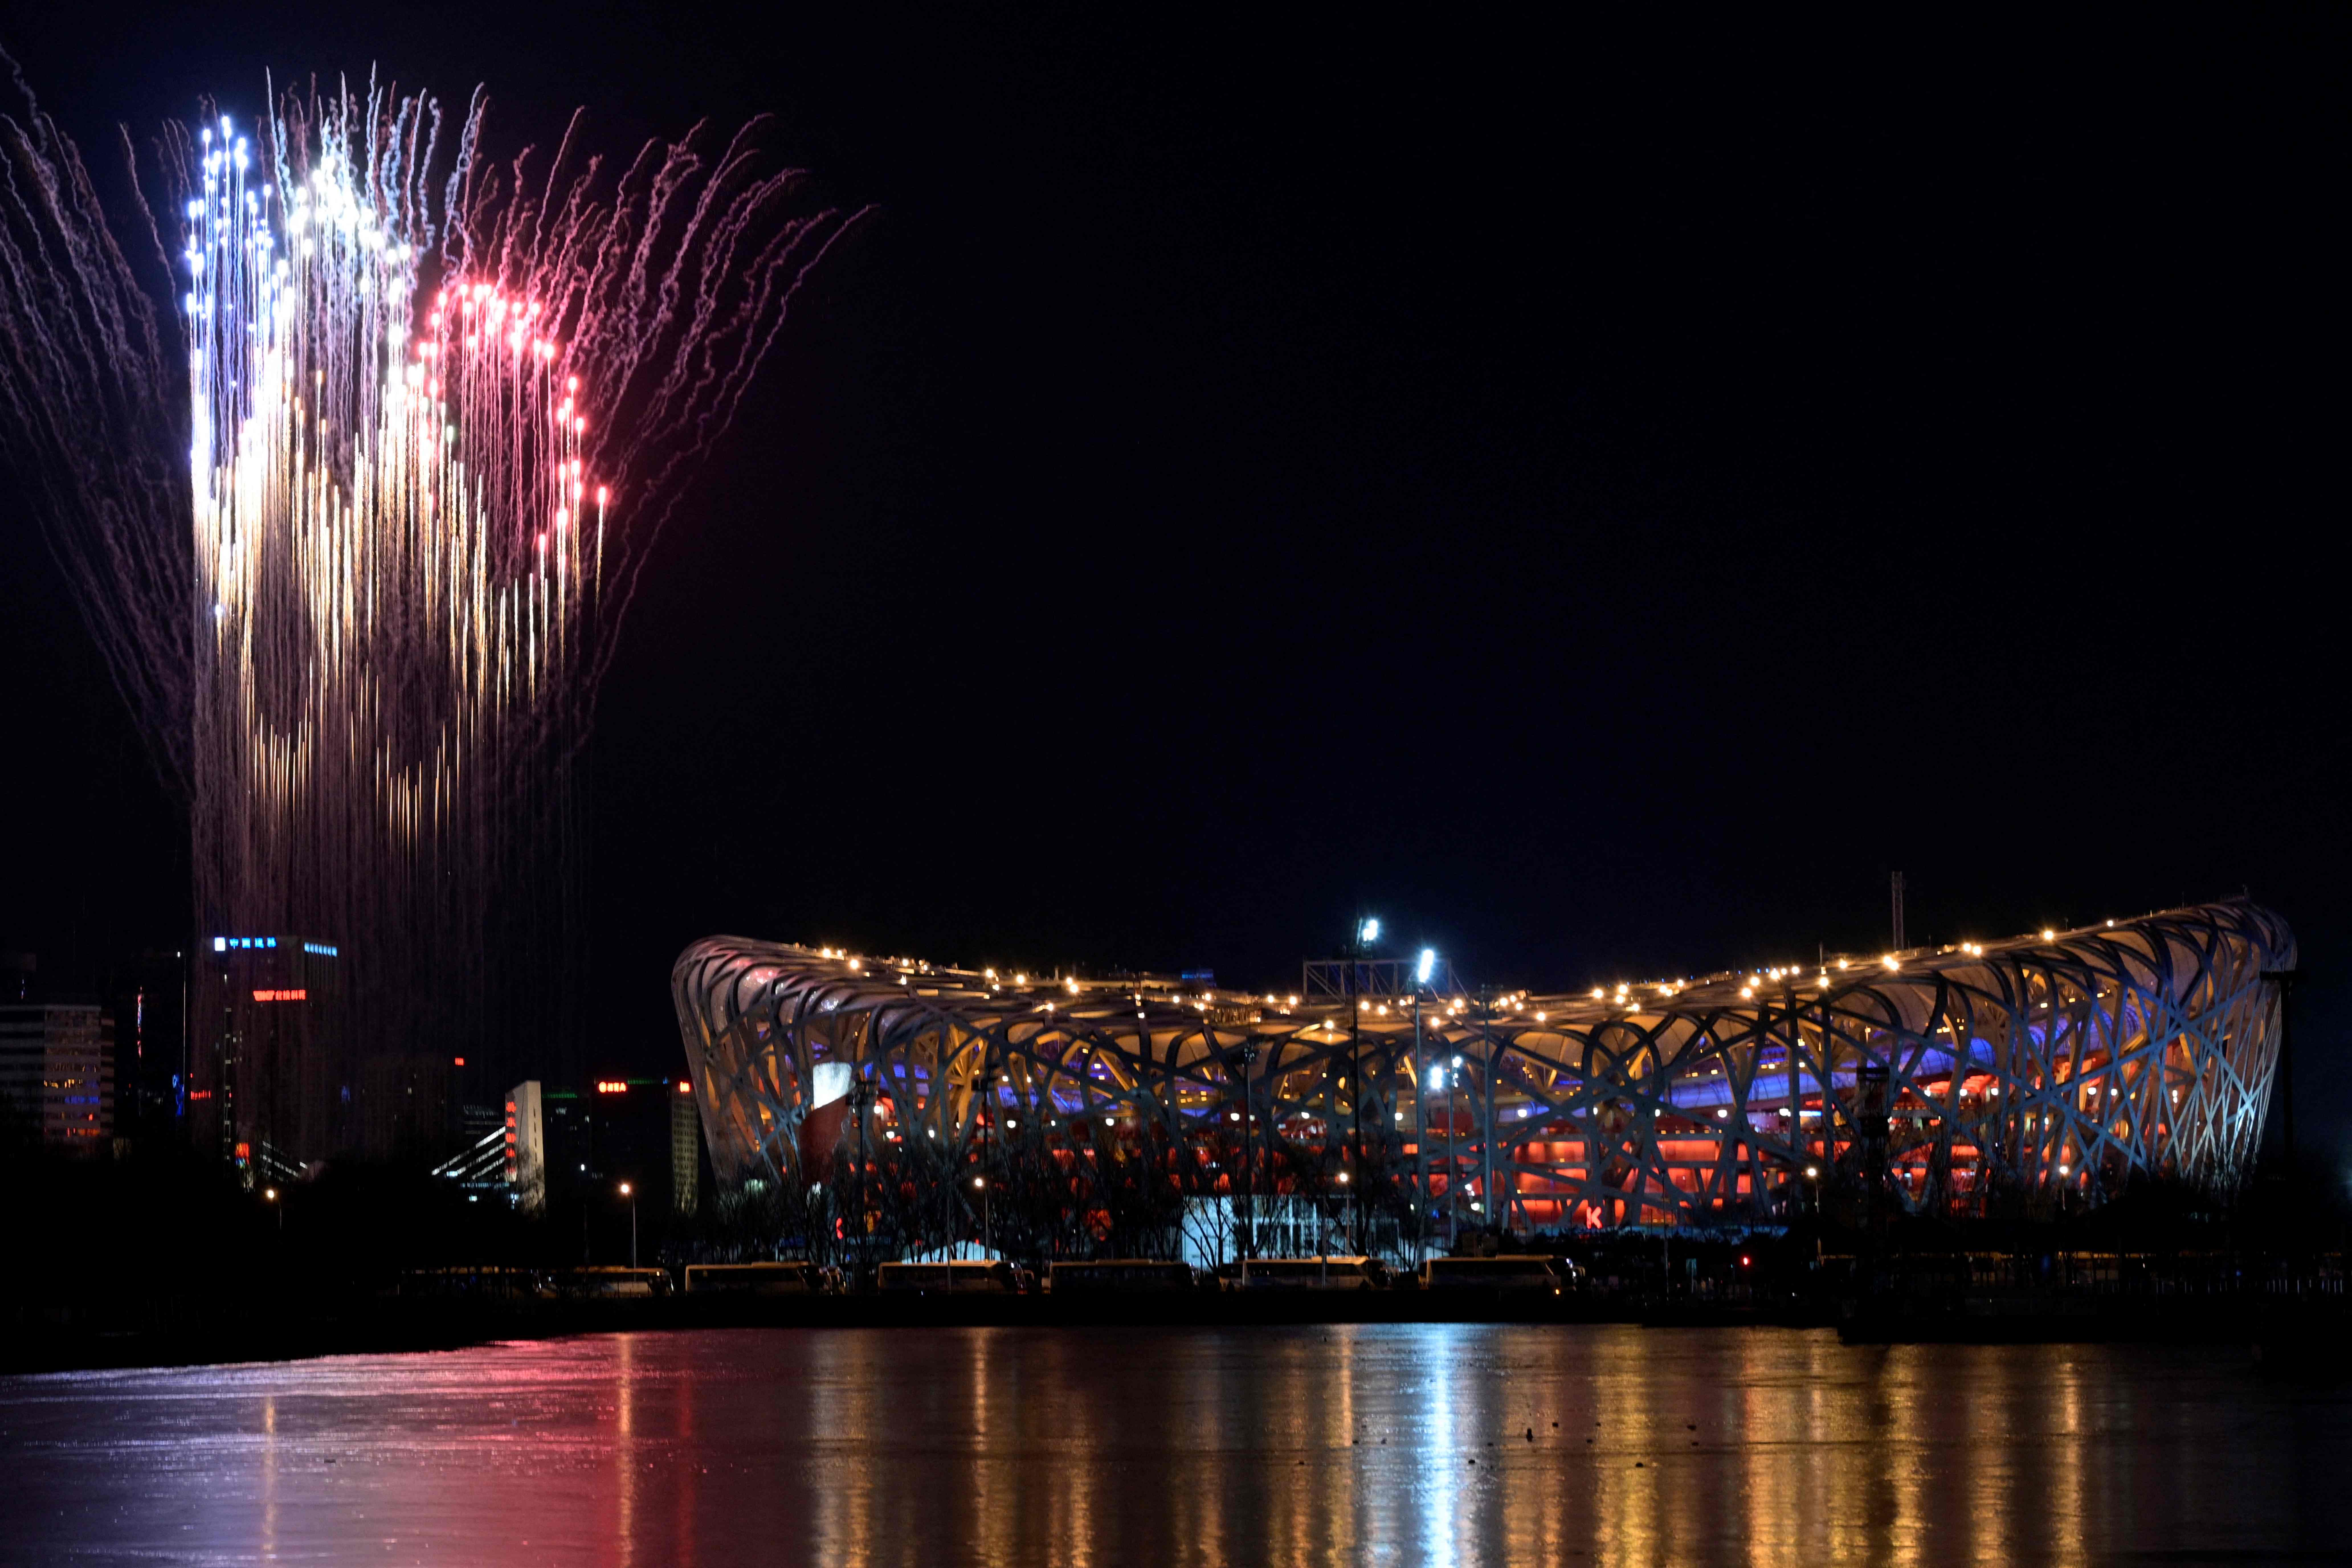  Фейерверки в форме олимпийских колец над стадионом «Птичье гнездо». Церемония открытия Зимних Олимпийских игр в Пекине. 4 февраля 2022 года. Фото  Sebastien Bozon/AFP/Scanpix/LETA